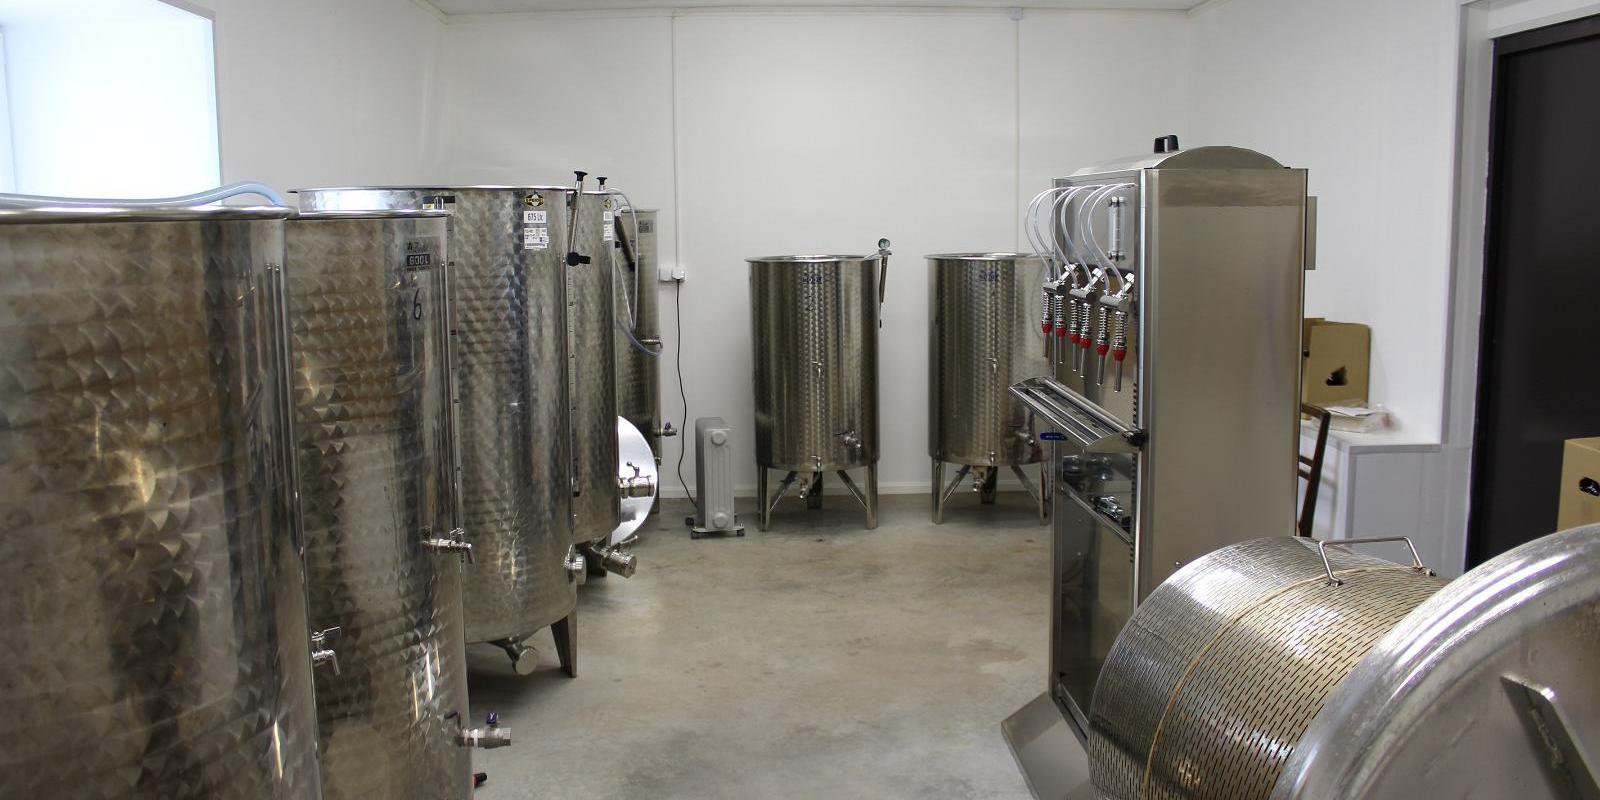 Vīna saimniecības "Järiste Veinitalu" vīnu un sidru degustēšanas darbnīca